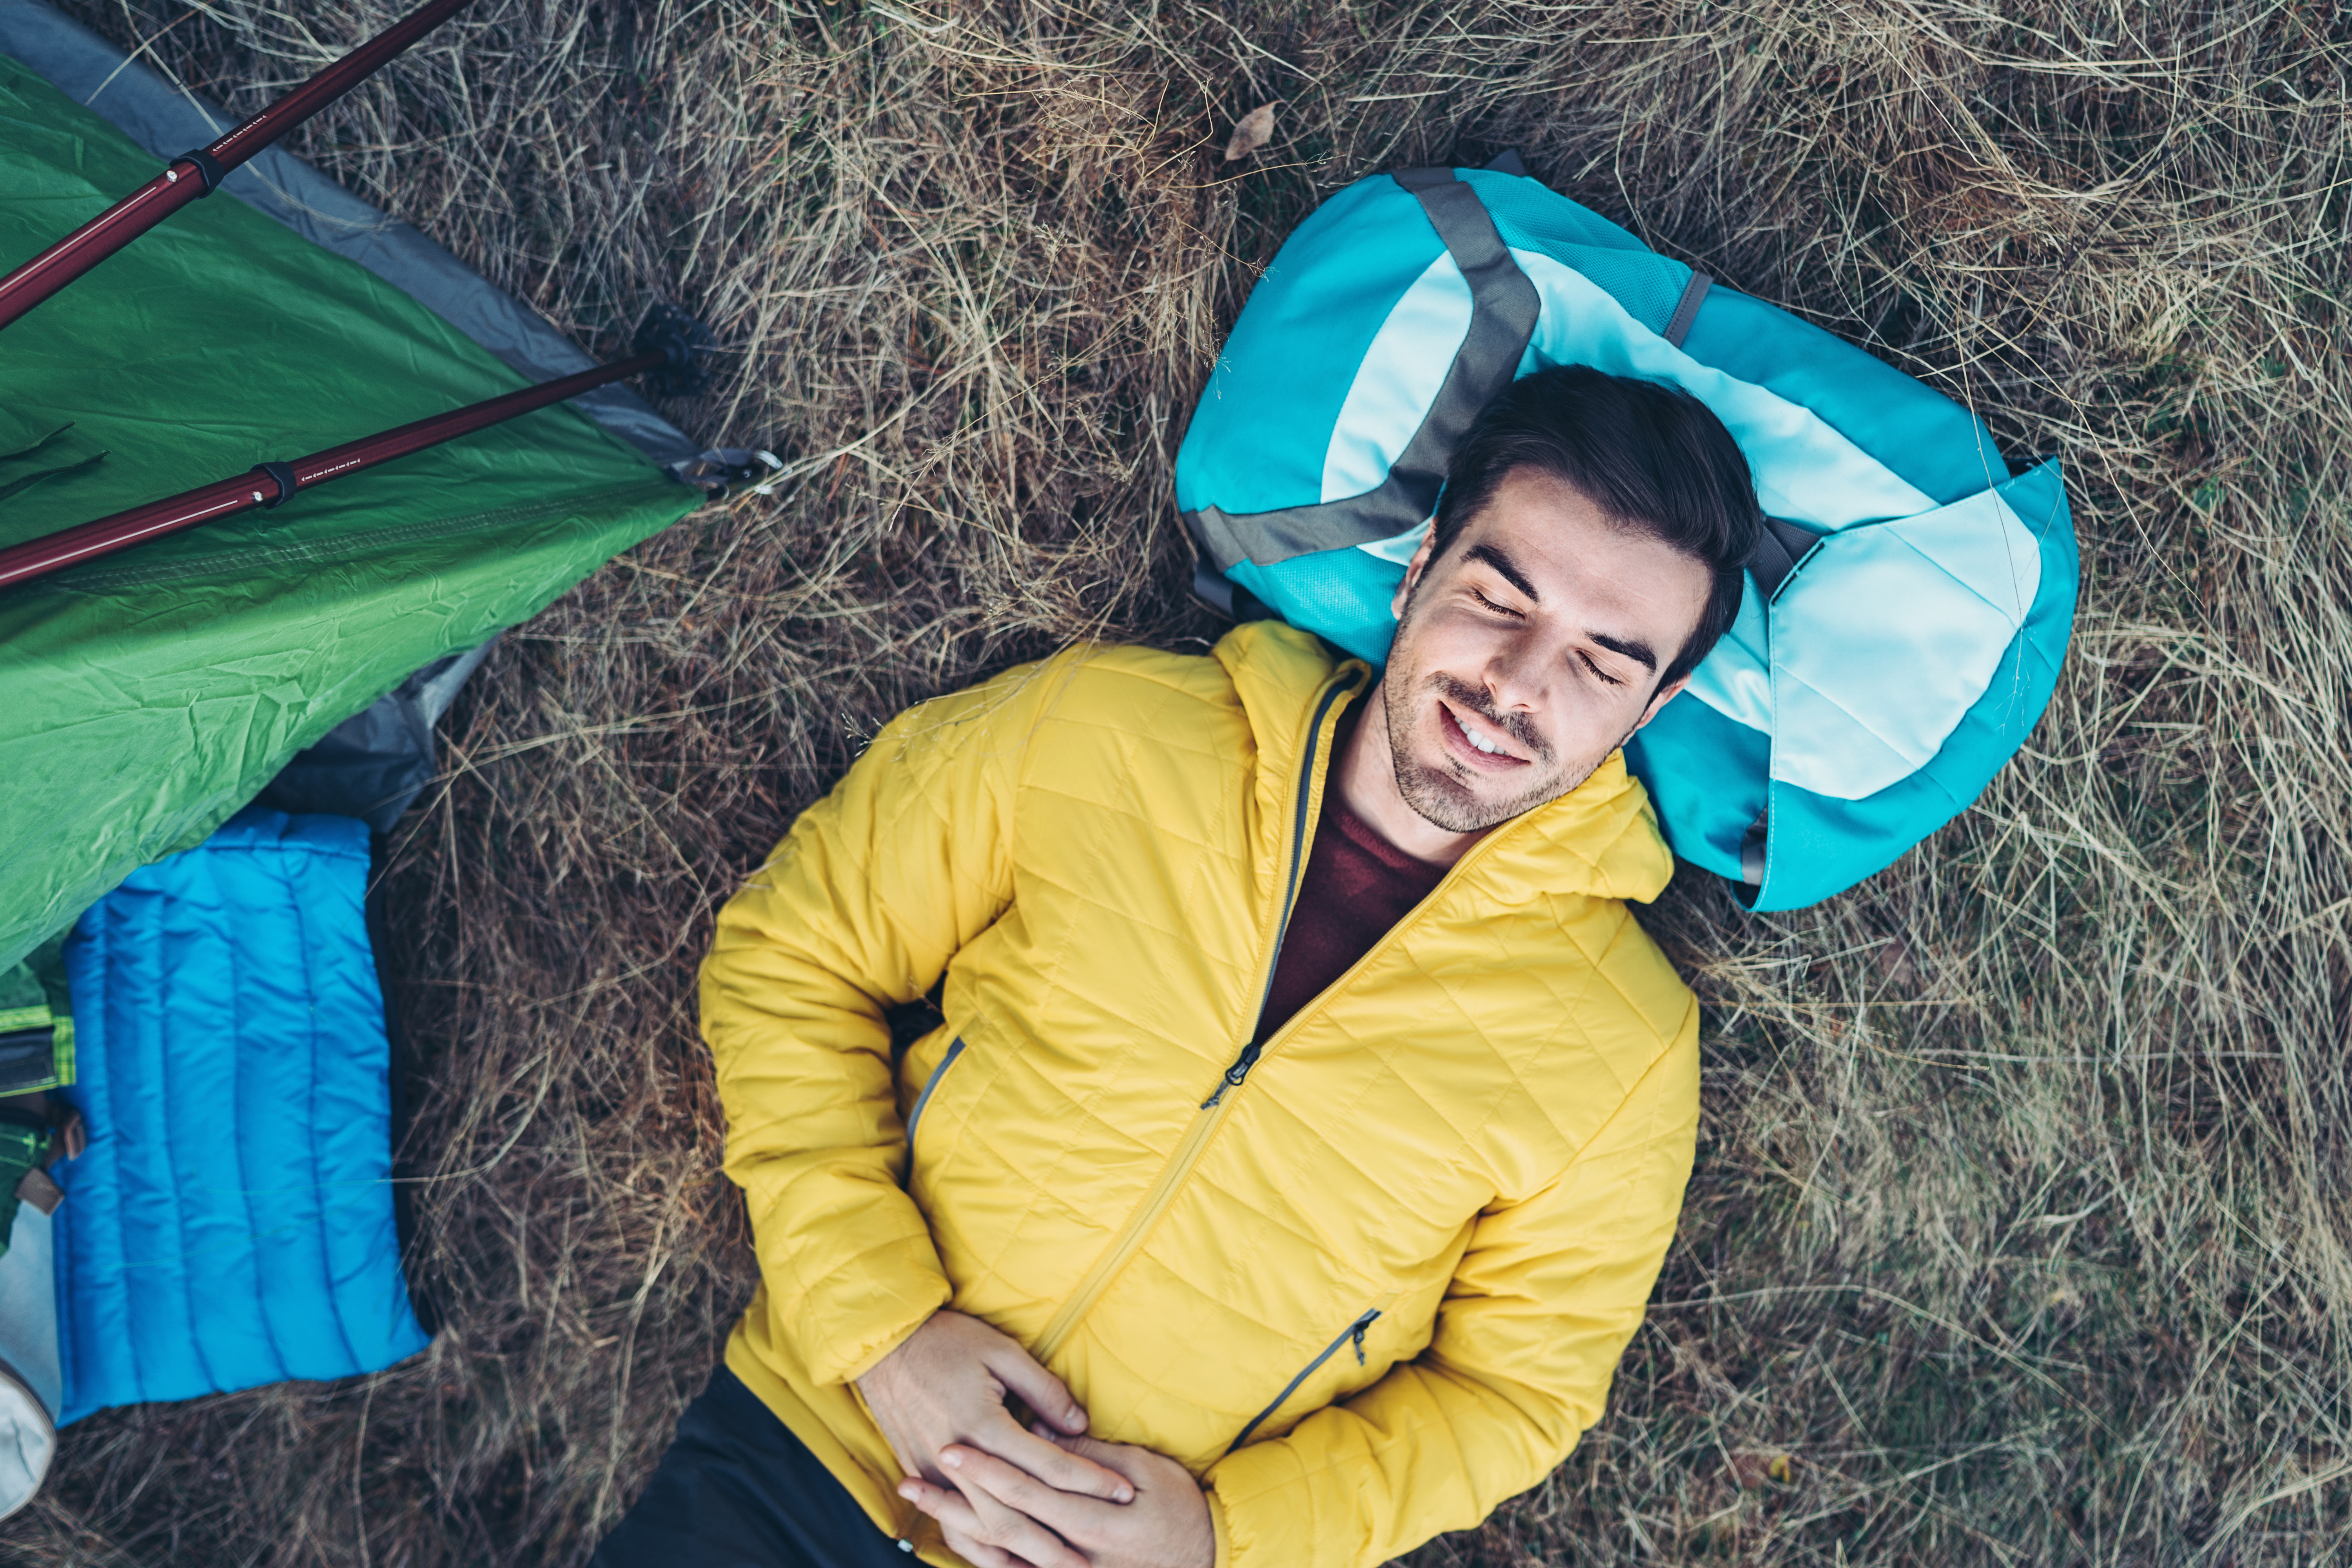 Descansar mejor cuando vas de acampada es posible